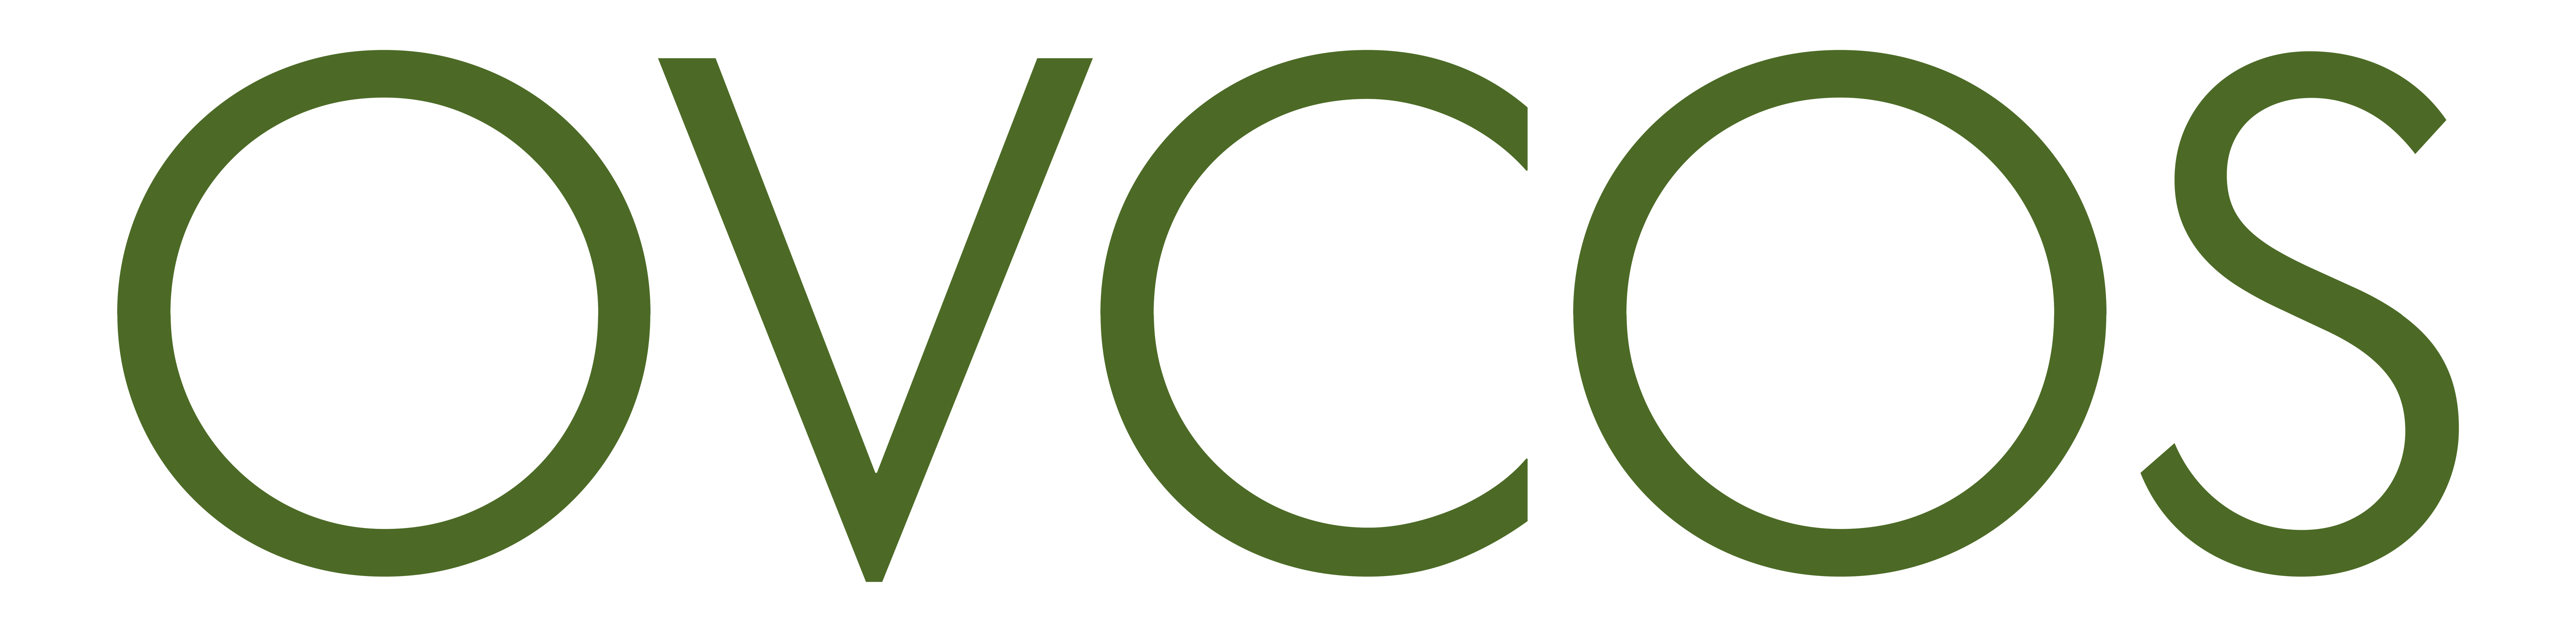 logo OVCOS